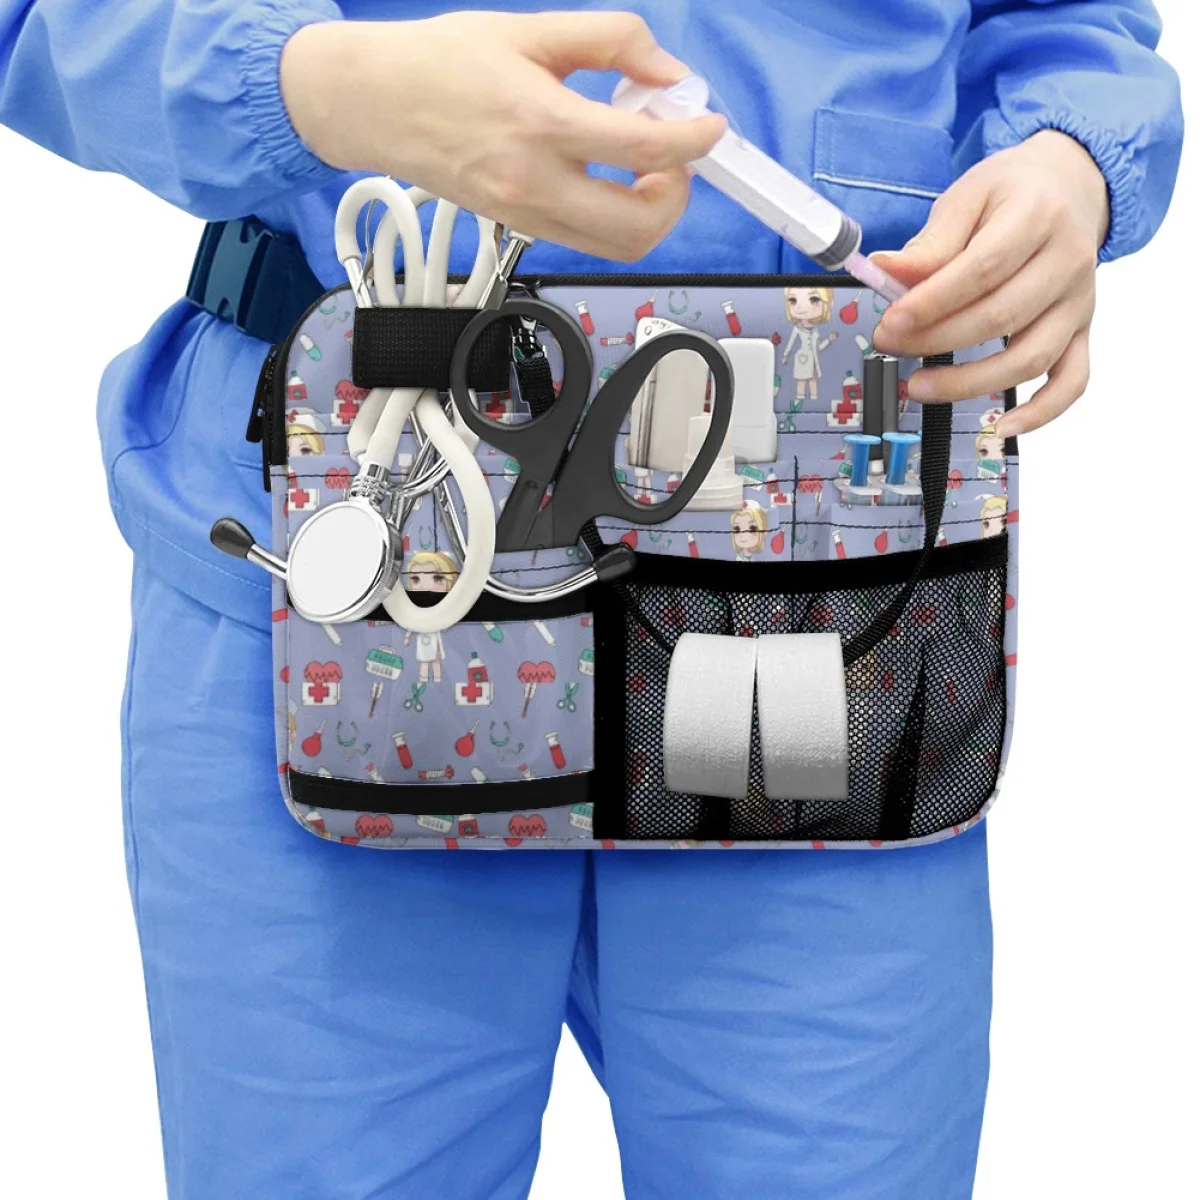 Mentős orvos Kórház Nyomtatás Mulit kétrétegű belső zsebek Derékcsomag Kényelmes fogantyú Munka Nővér zseb Crossbody táska